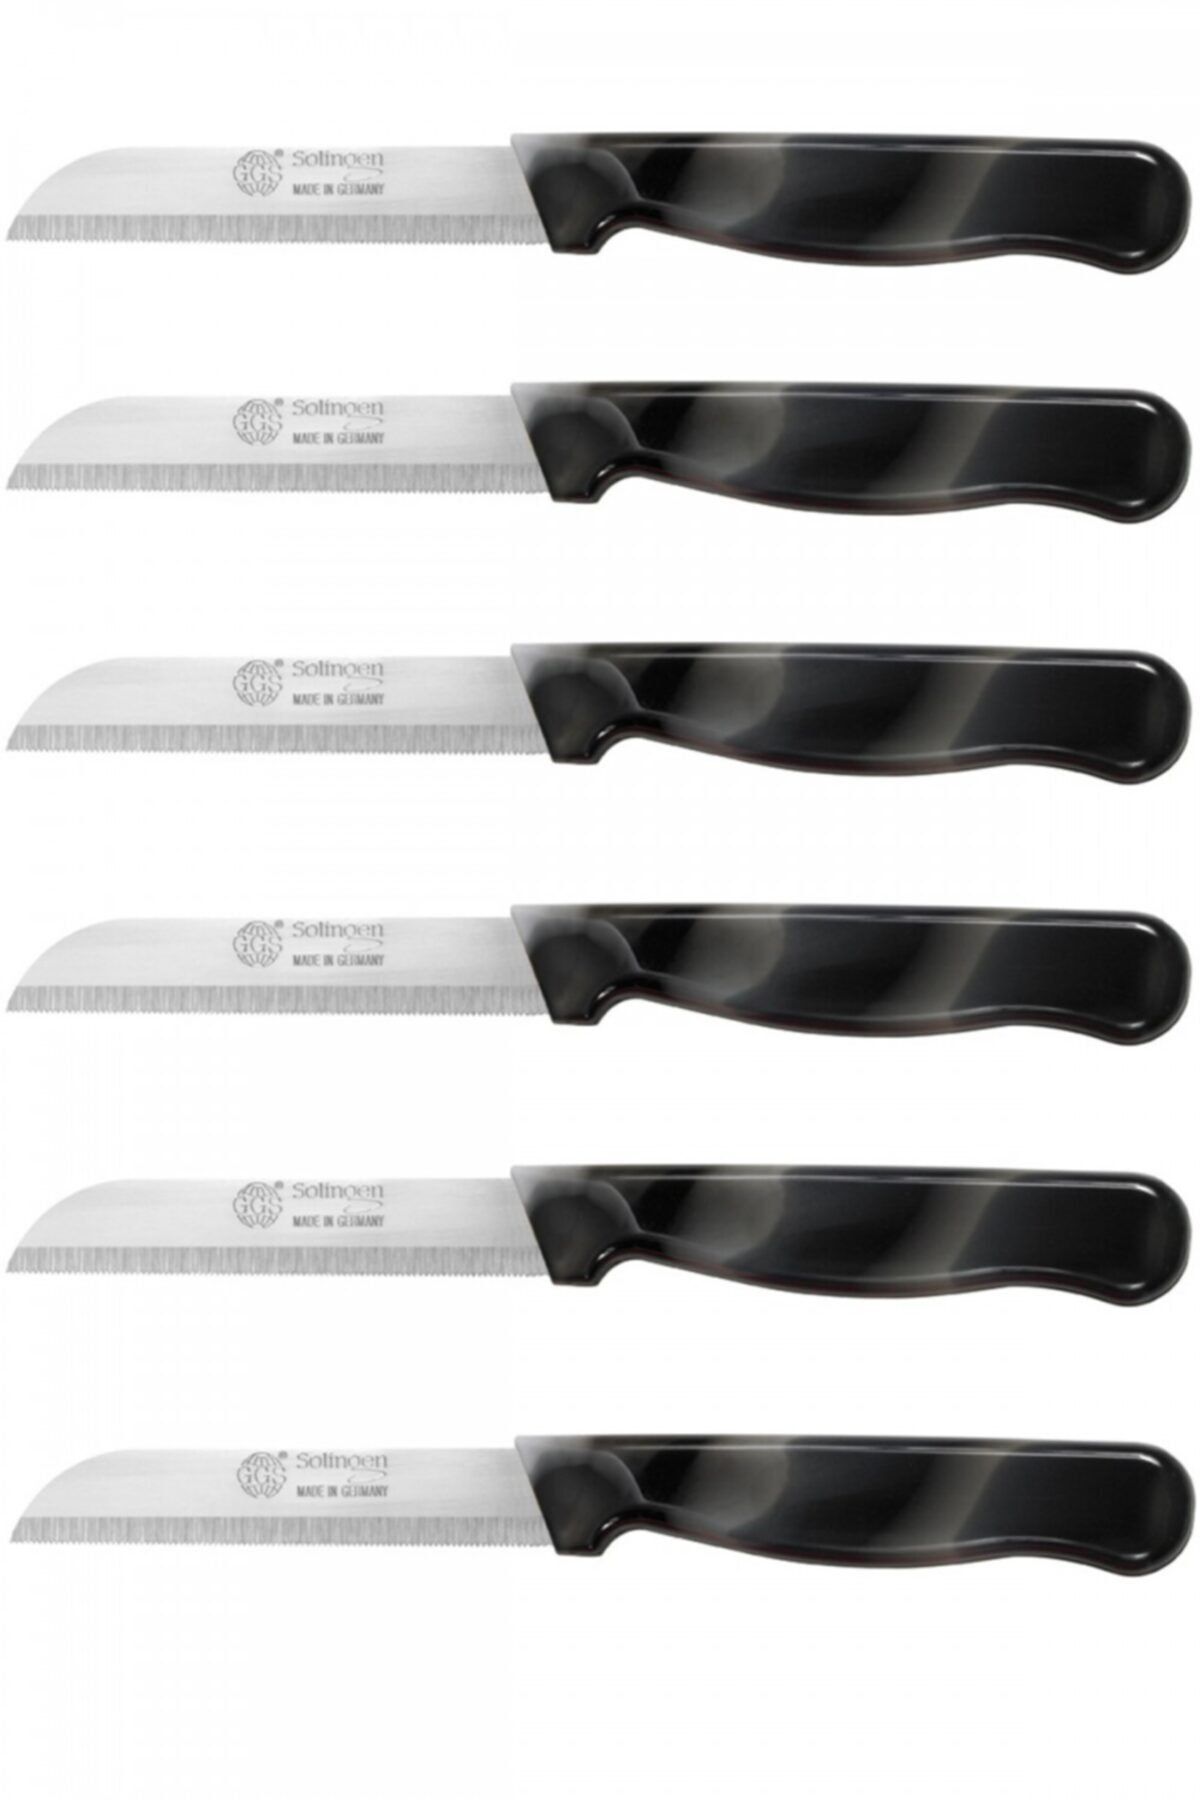 SMI 6 pcs – Paring Knife Set Solingen Vegetable Knife Serrated Fruit  Kitchen Knife Flexible Multi Color Fixed Blade, Made in Solingen Germany